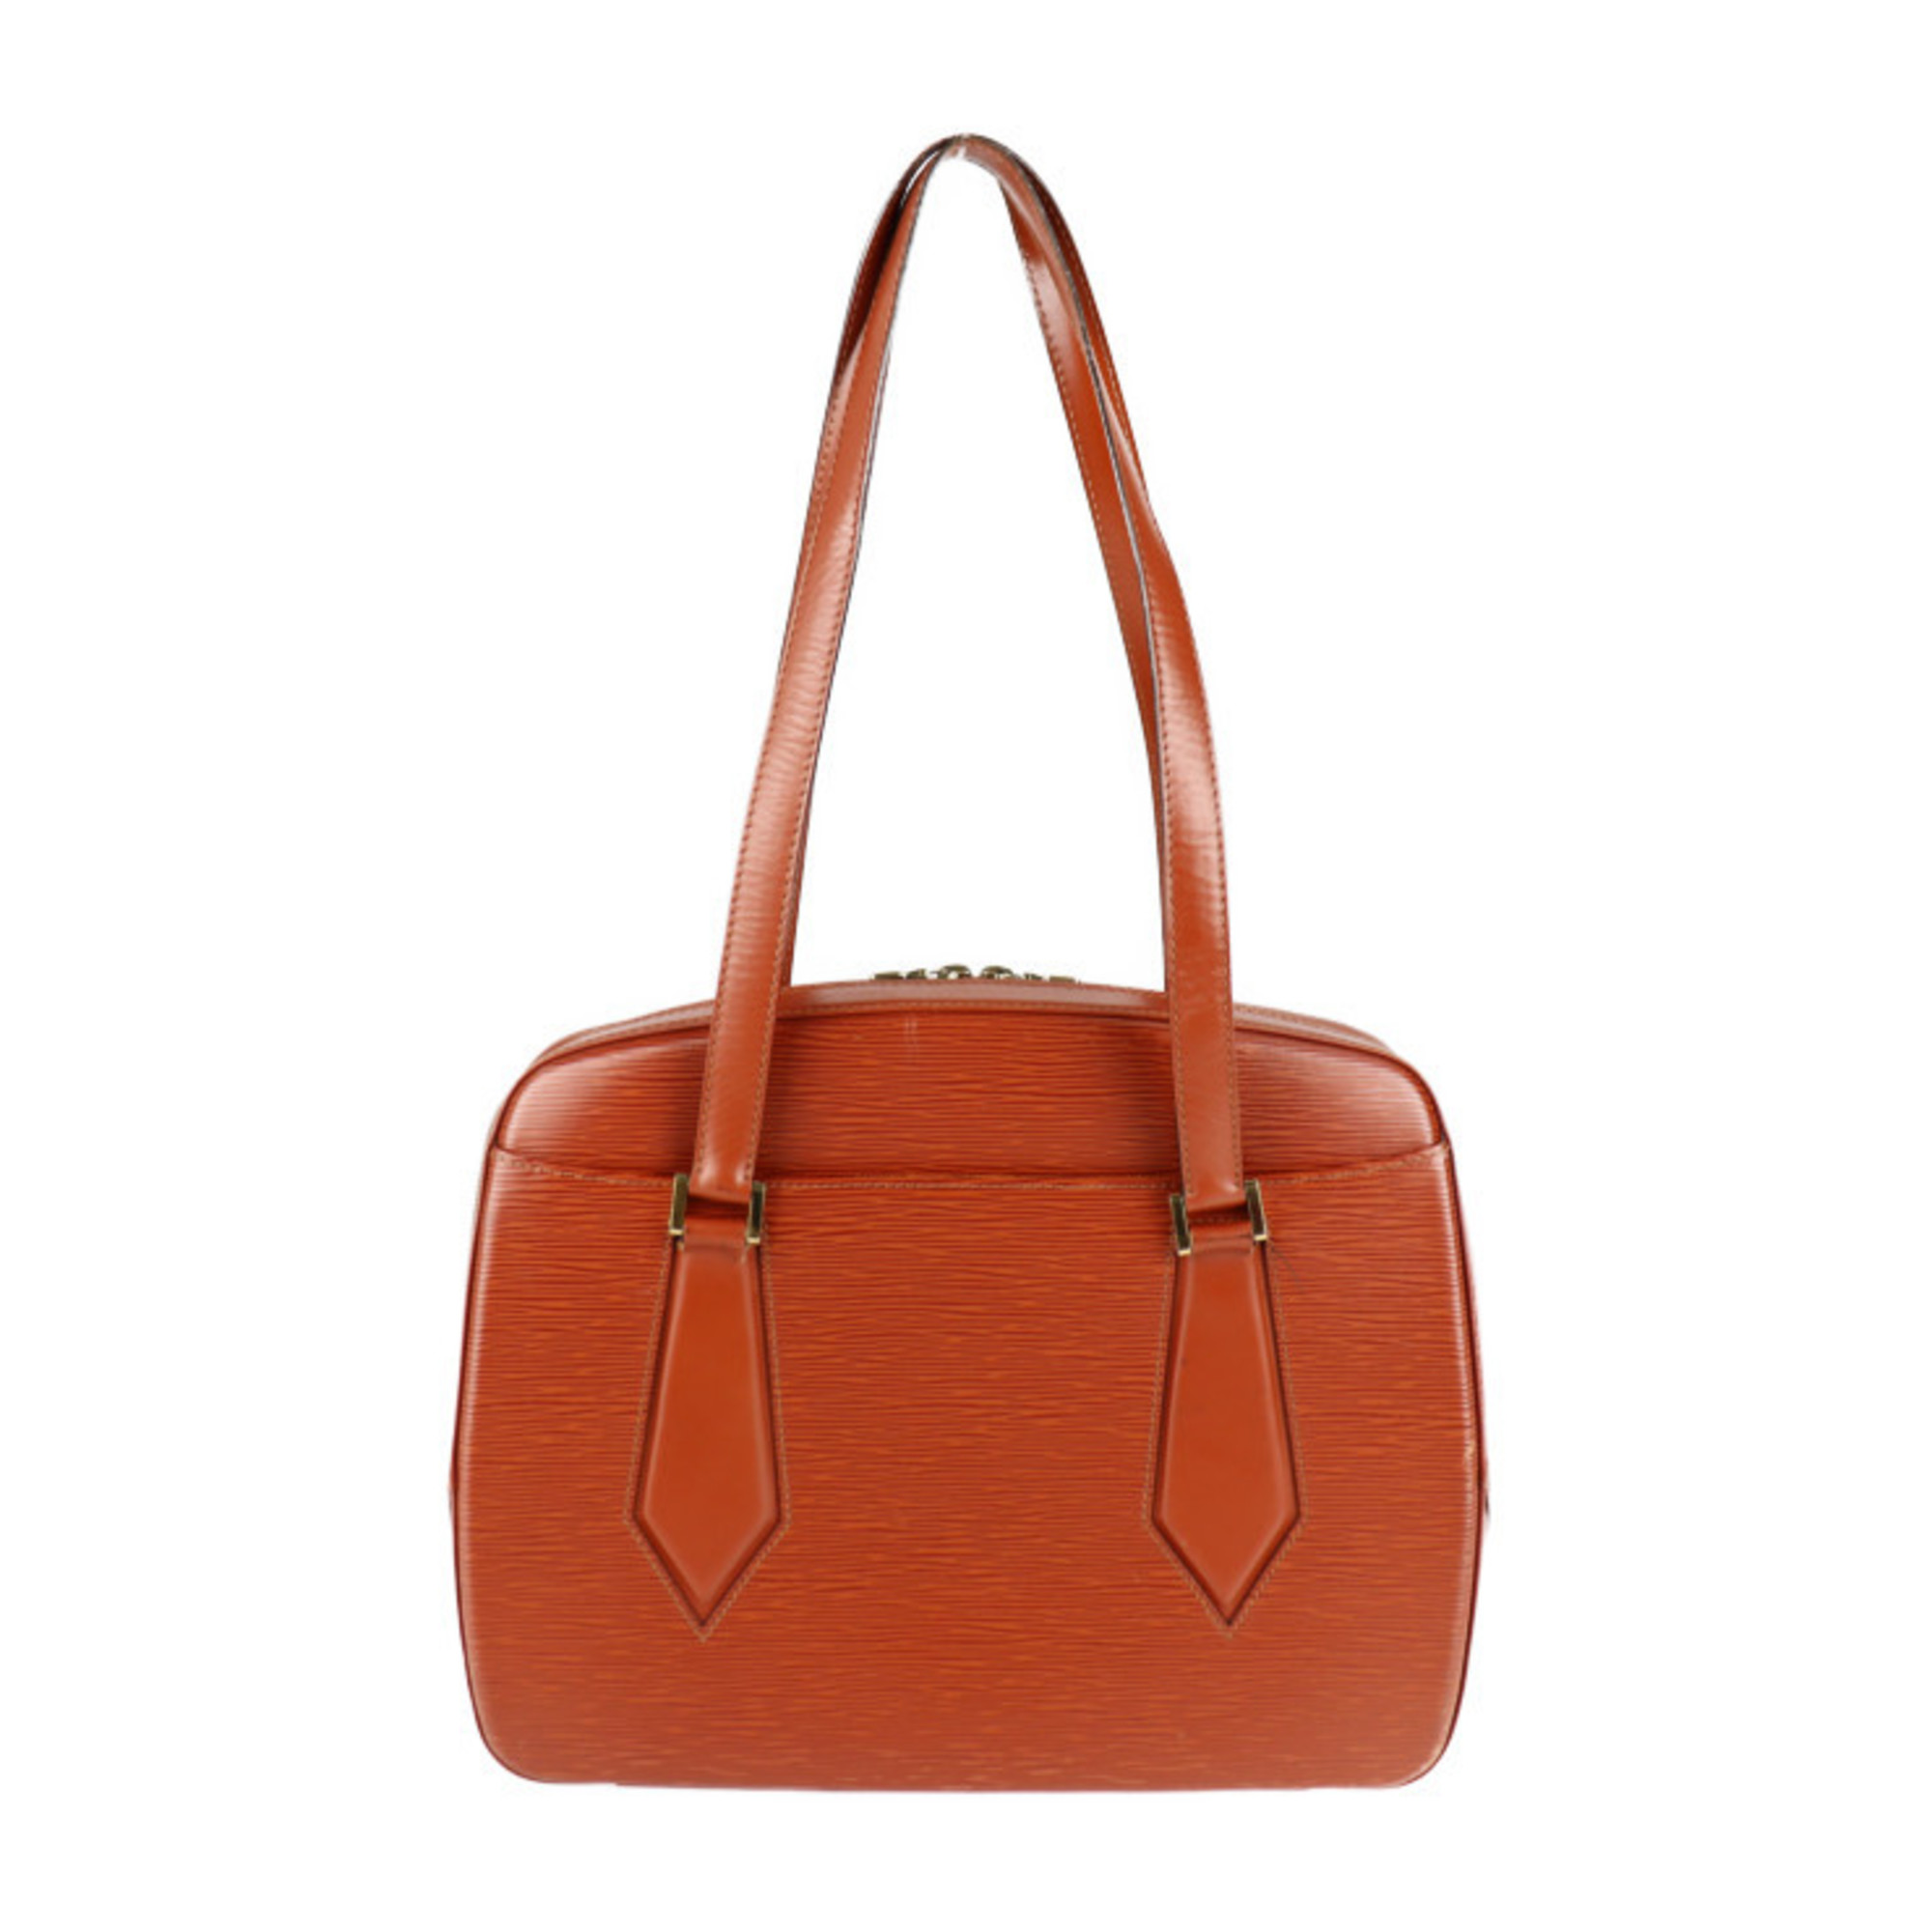 LOUIS VUITTON Louis Vuitton Voltaire Epi Shoulder Bag M52433 Leather Kenya Brown Shopping